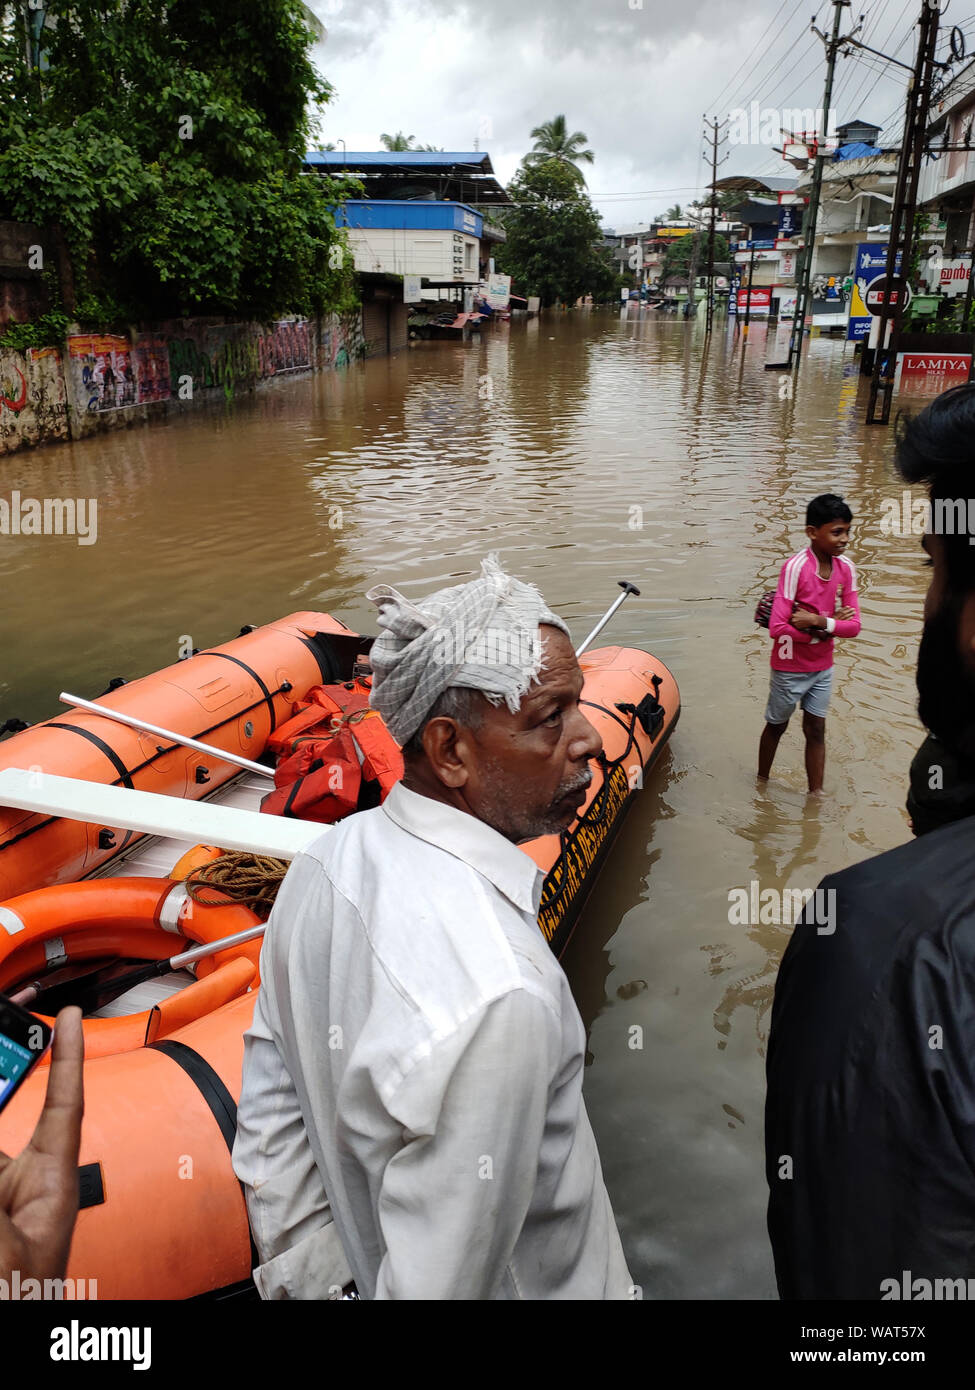 NILAMBUR, Kerala, Inde - août 08, 2019 : Les gens se sont rassemblés près de l'inondation dans la rue, Janathapadi Nilambur. Banque D'Images